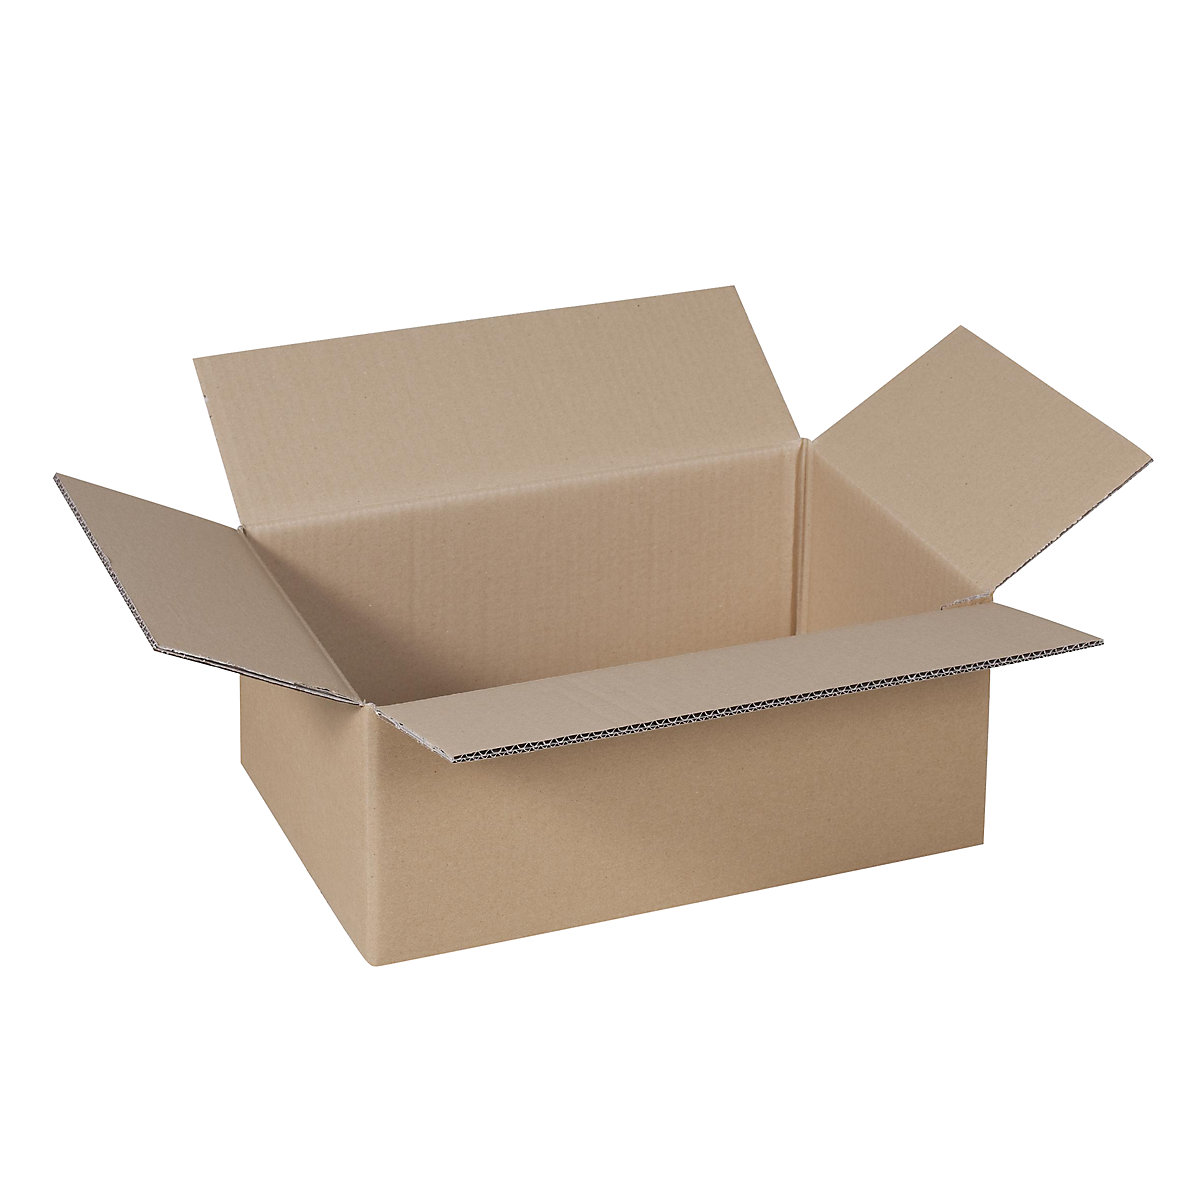 Sklopiva kartonska kutija, FEFCO 0201, od 2-valnog kartona, unutarnje dimenzije 605 x 455 x 180 mm, pak. 50 kom.-21